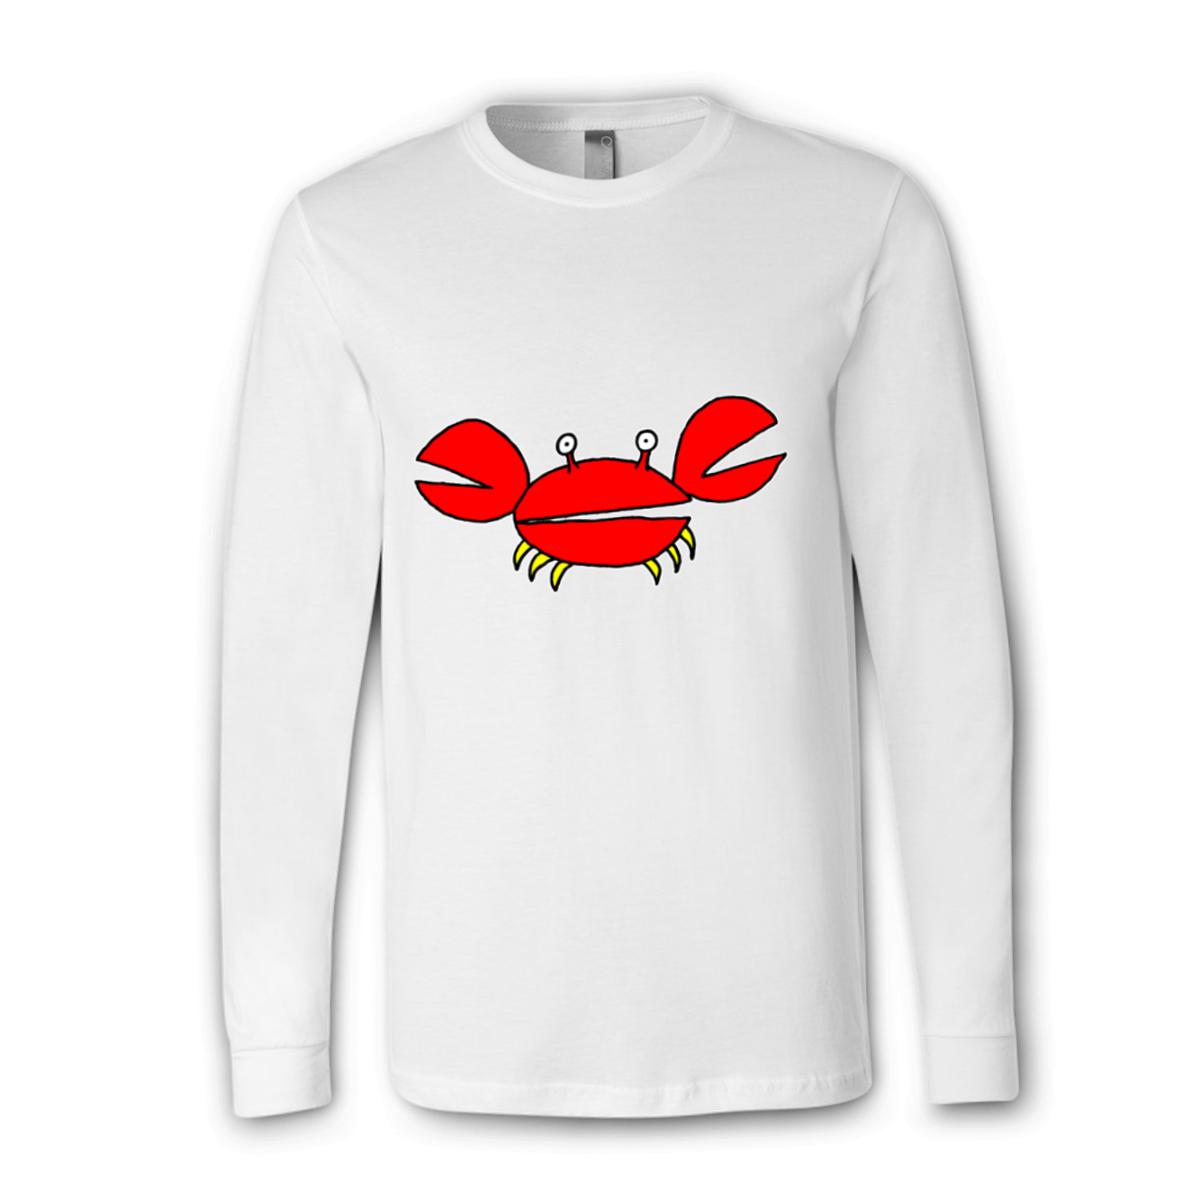 Crab Unisex Long Sleeve Tee Large white